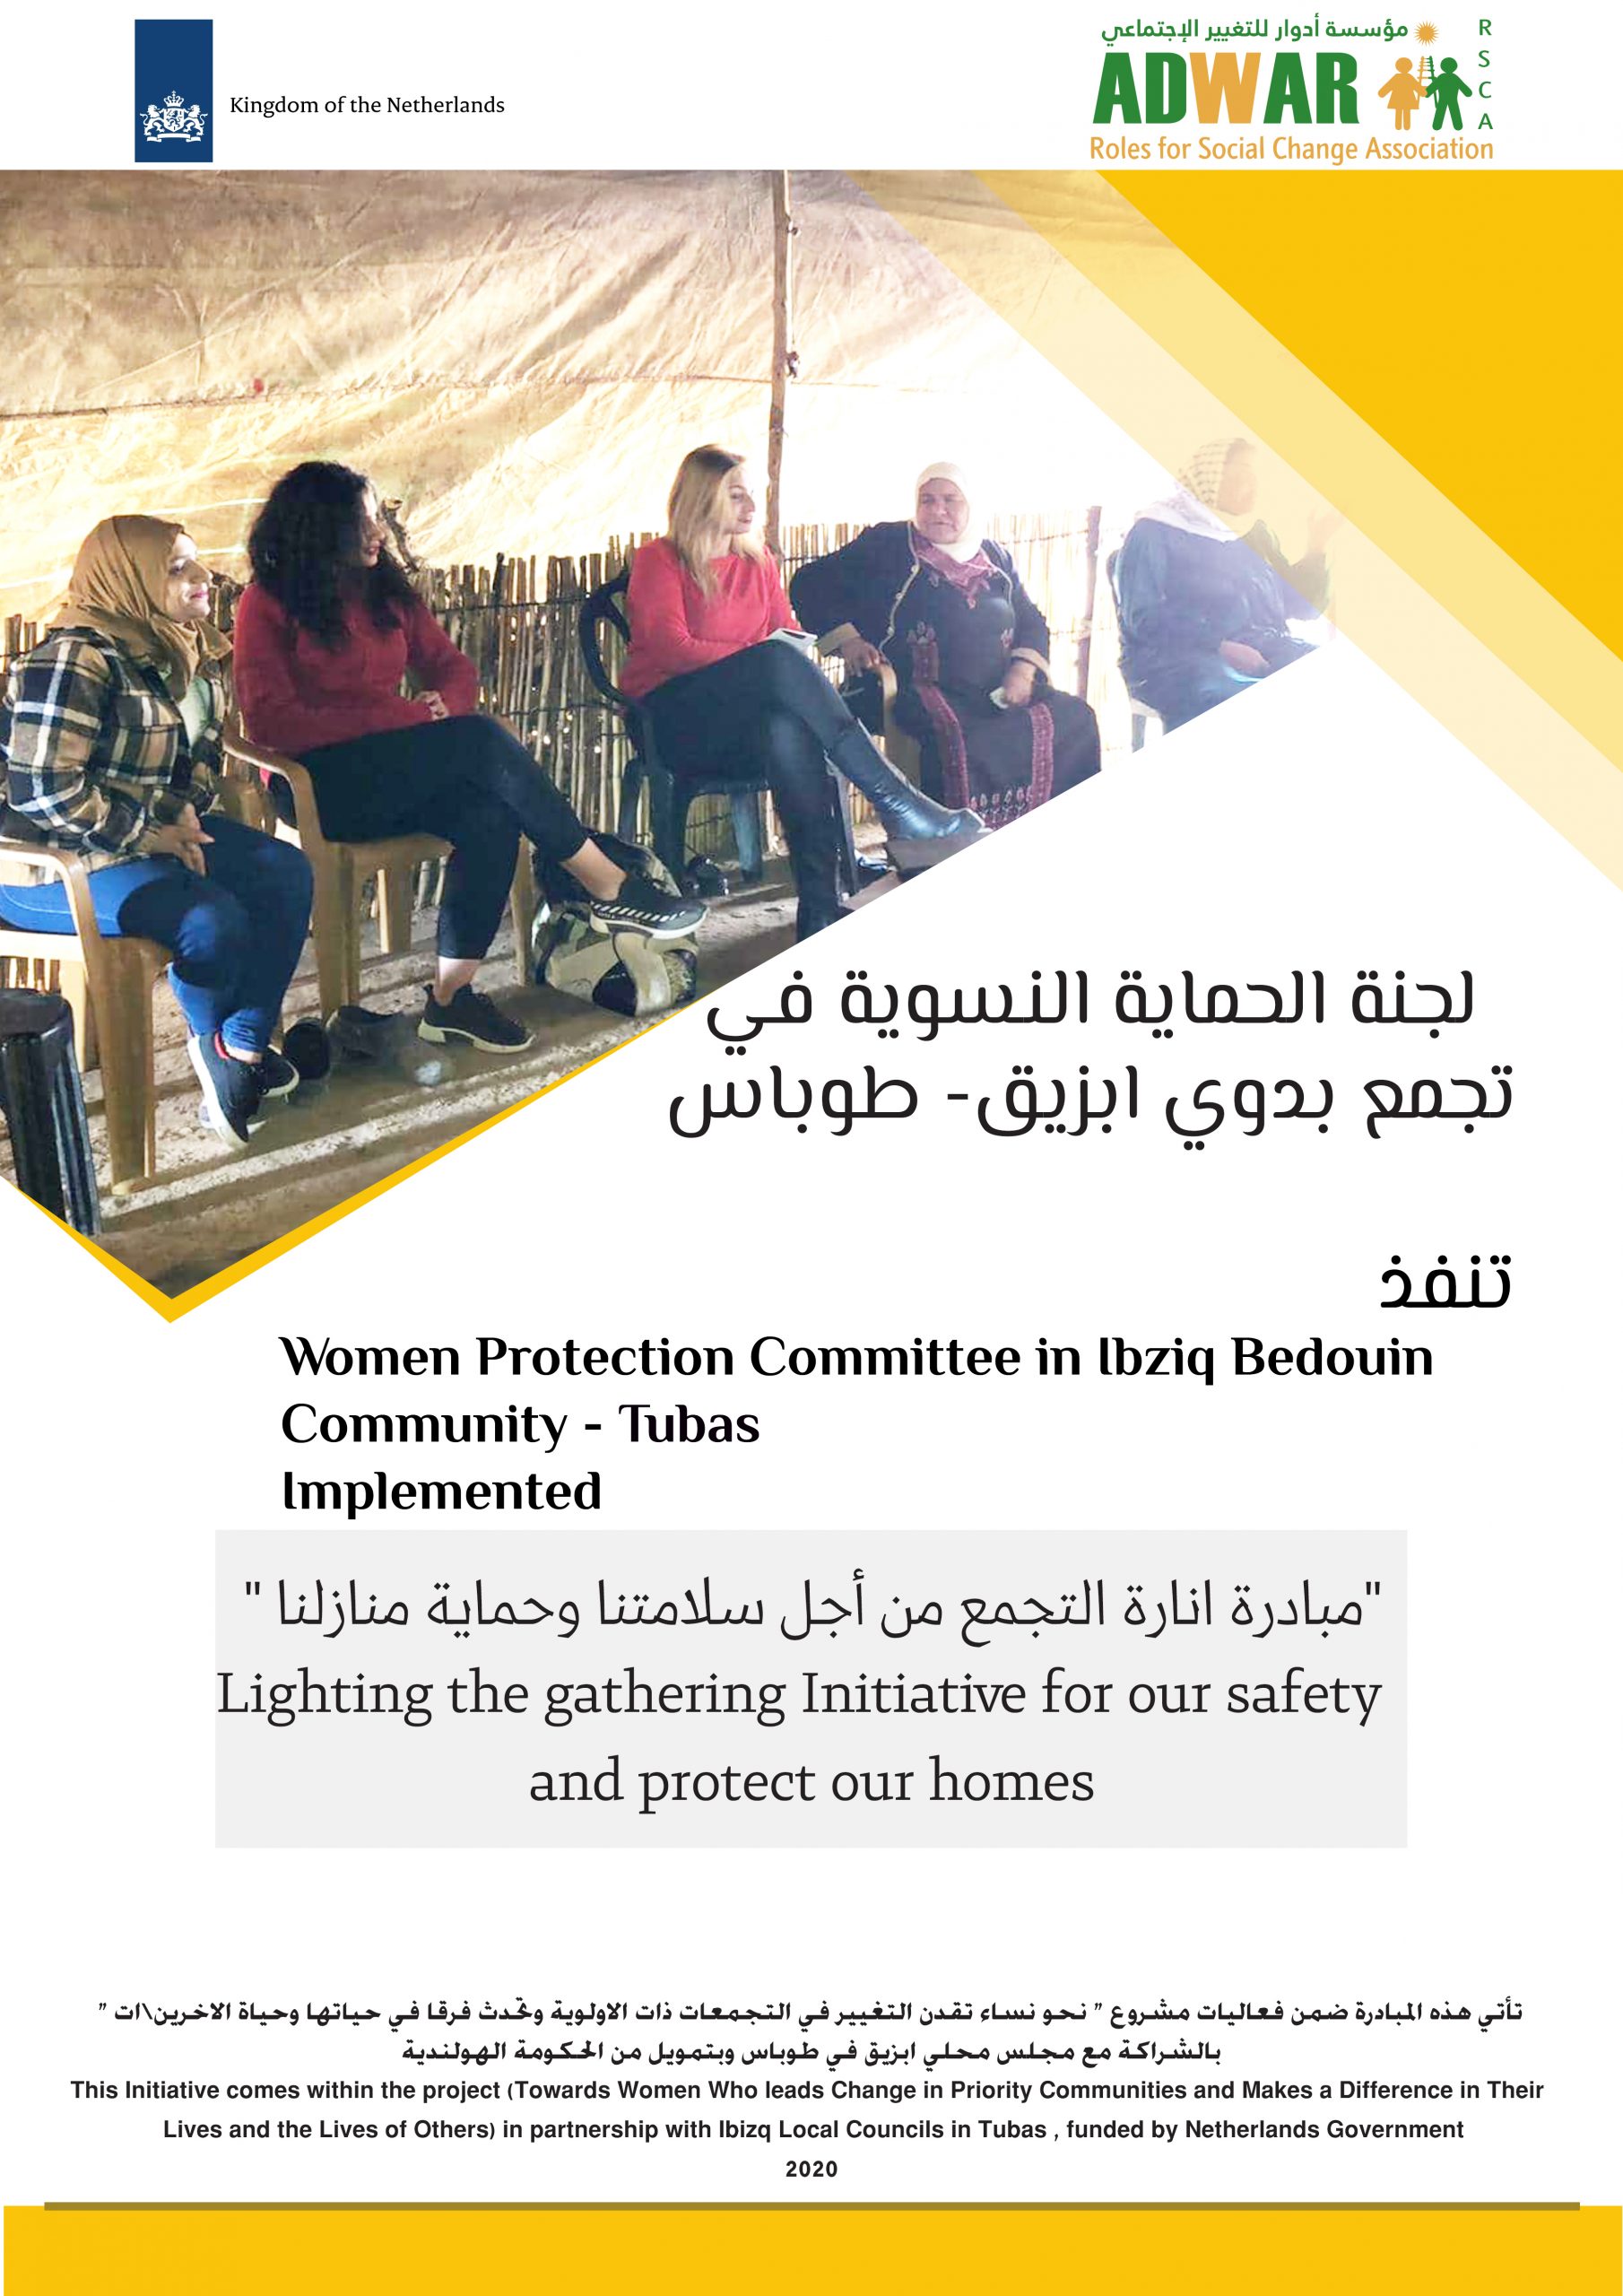  لجنة الحماية النسوية في تجمع بدوي ابزيق ـ طوباس